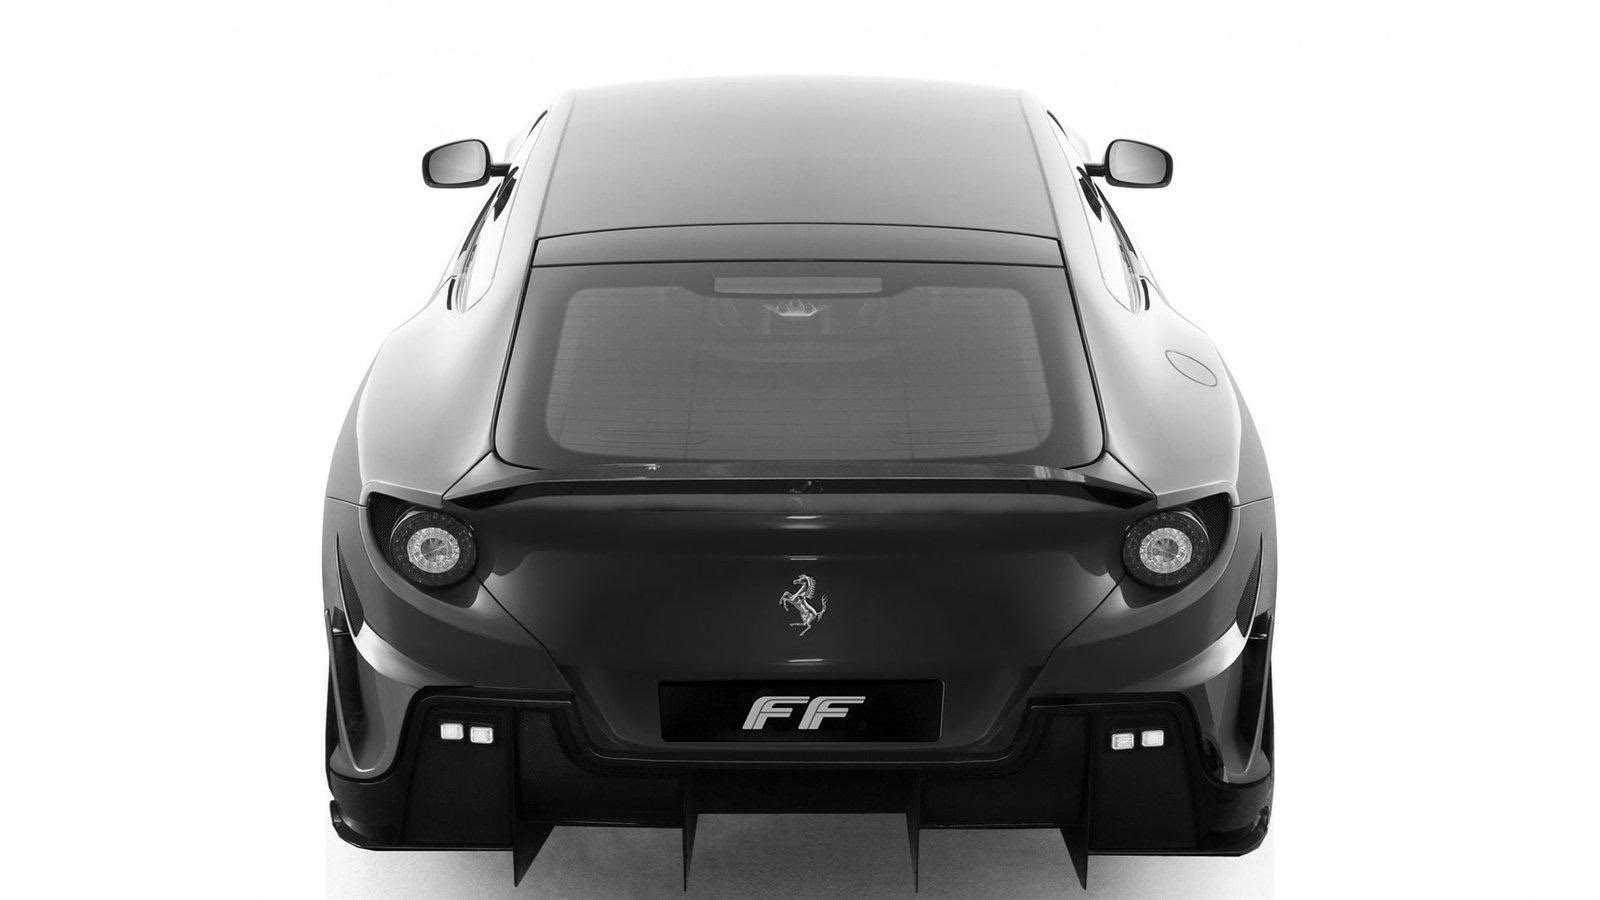 DMC Ferrari FF